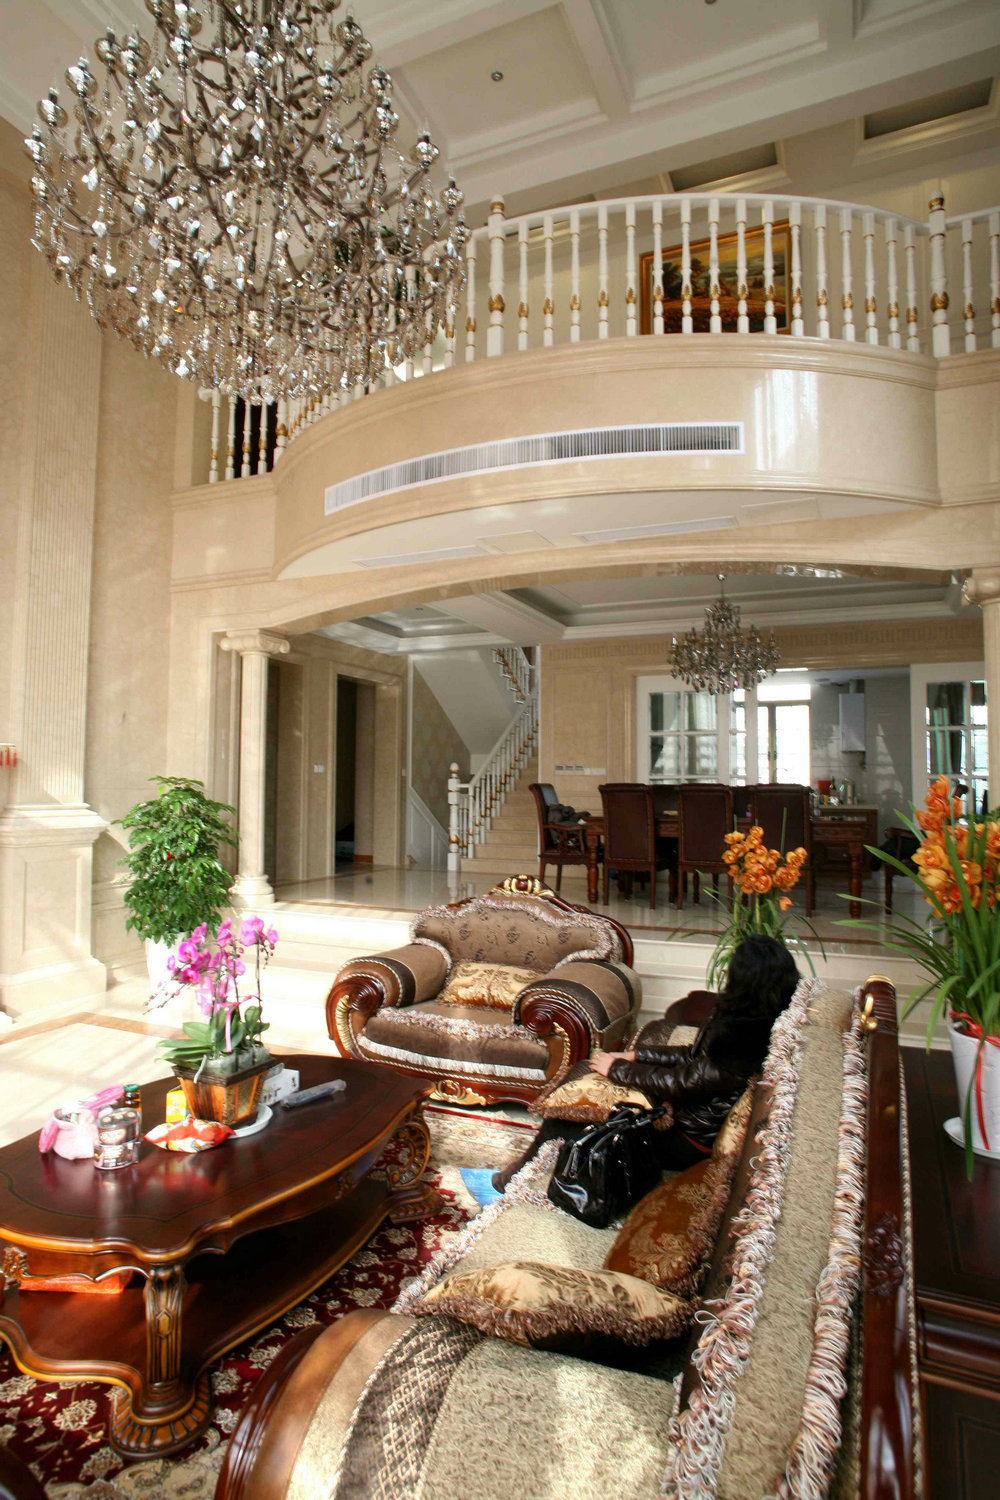 一楼客厅气派挑高的整体共享空间,完全体现了别墅的尊贵气息.